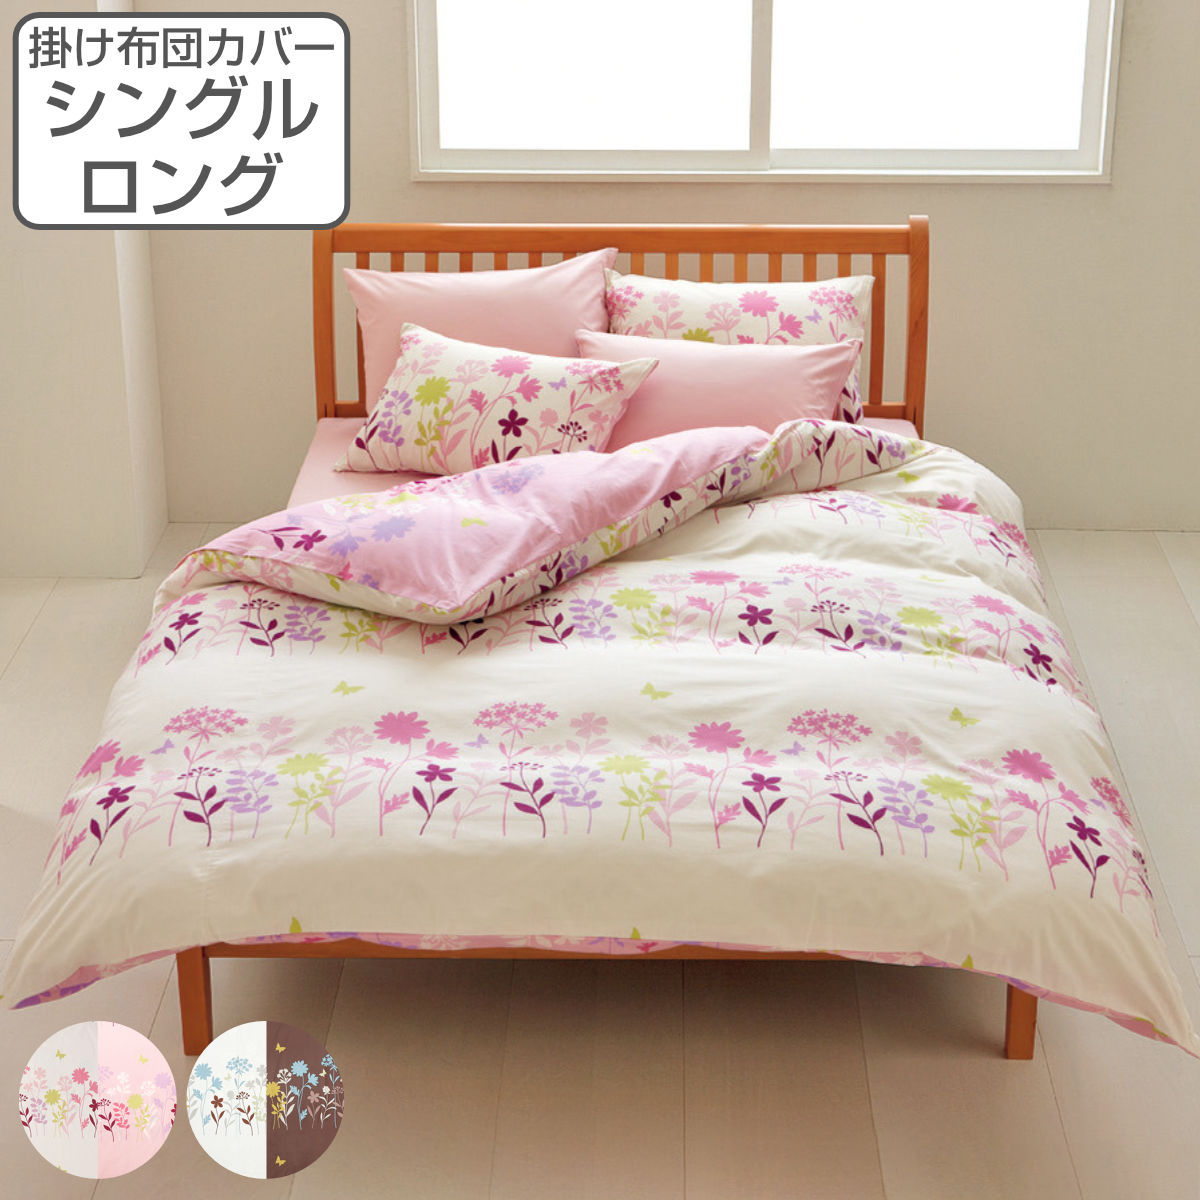 マリメッコ 西川 シーツ 寝具 日本製 ダブル カバー 枕 シーツ